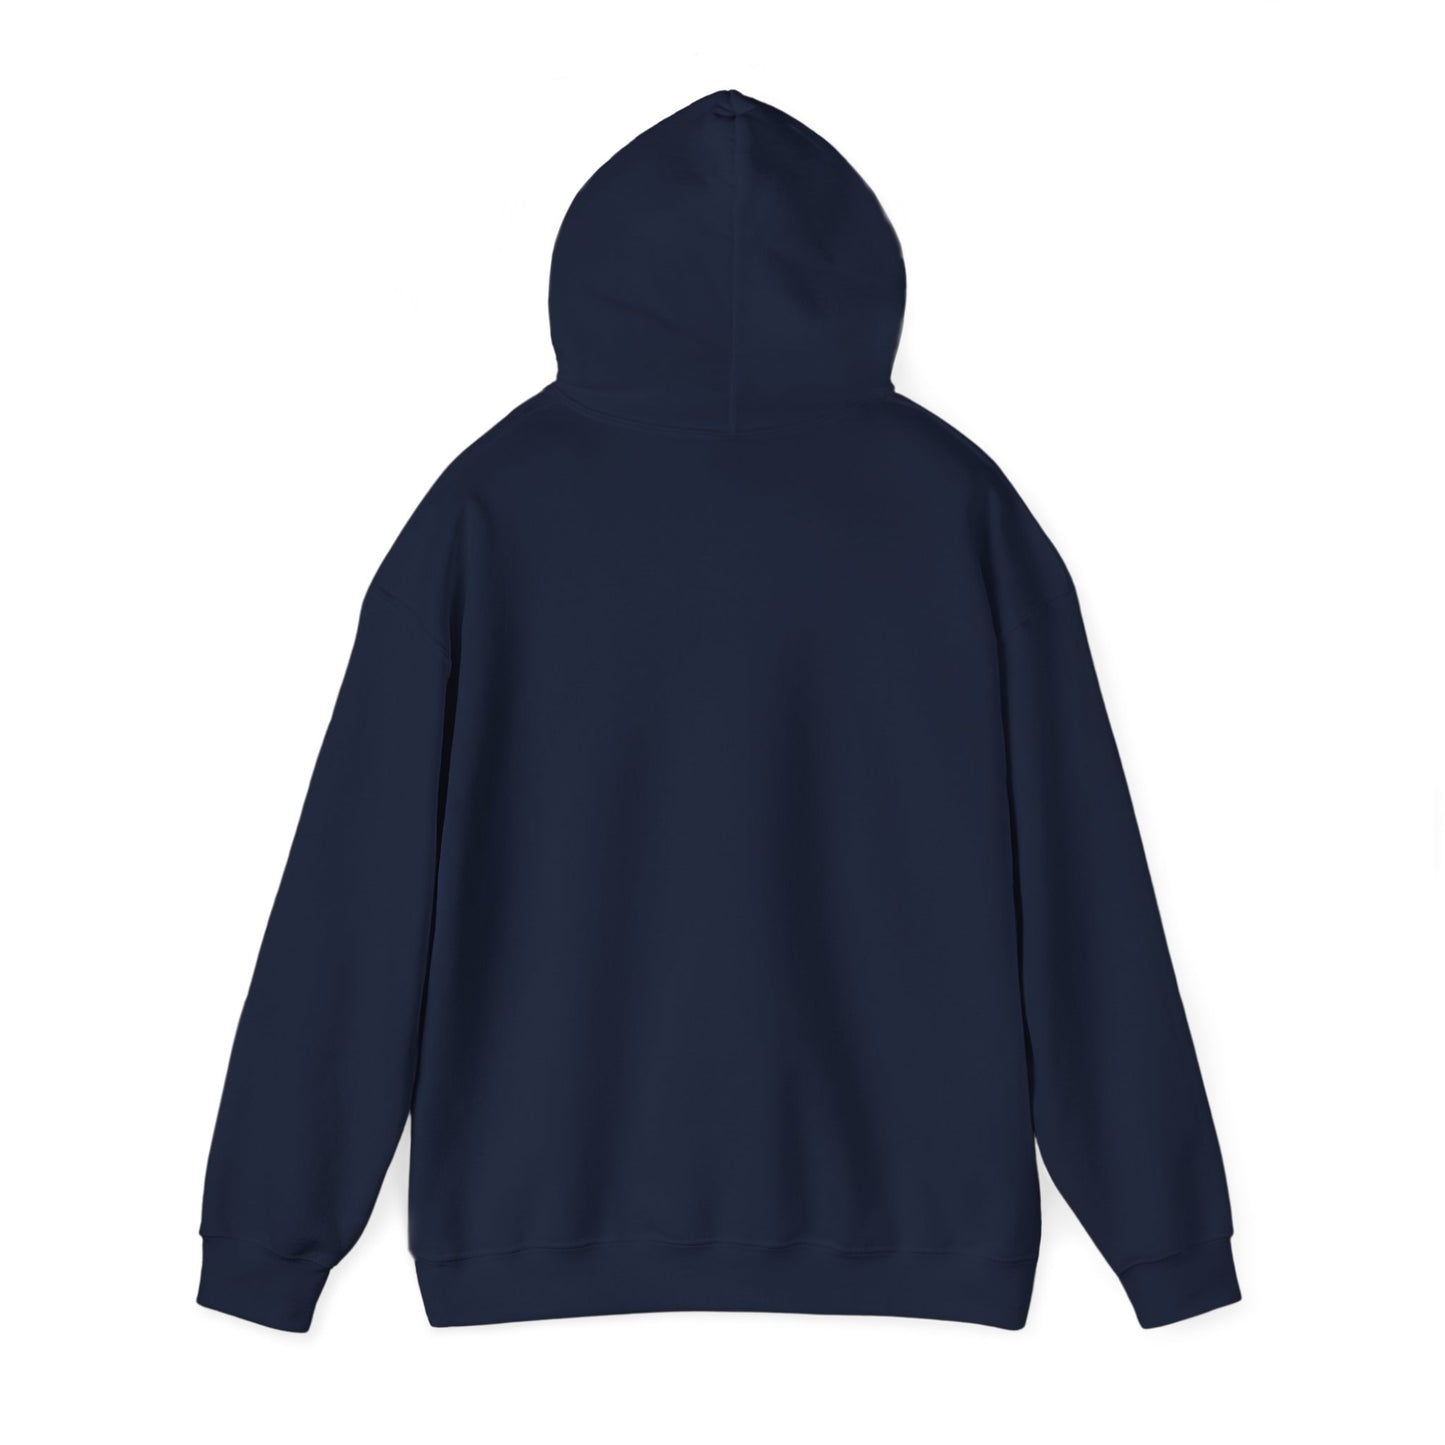 Worthy Worthy Worthy - Unisex Heavy Blend Hooded Sweatshirt